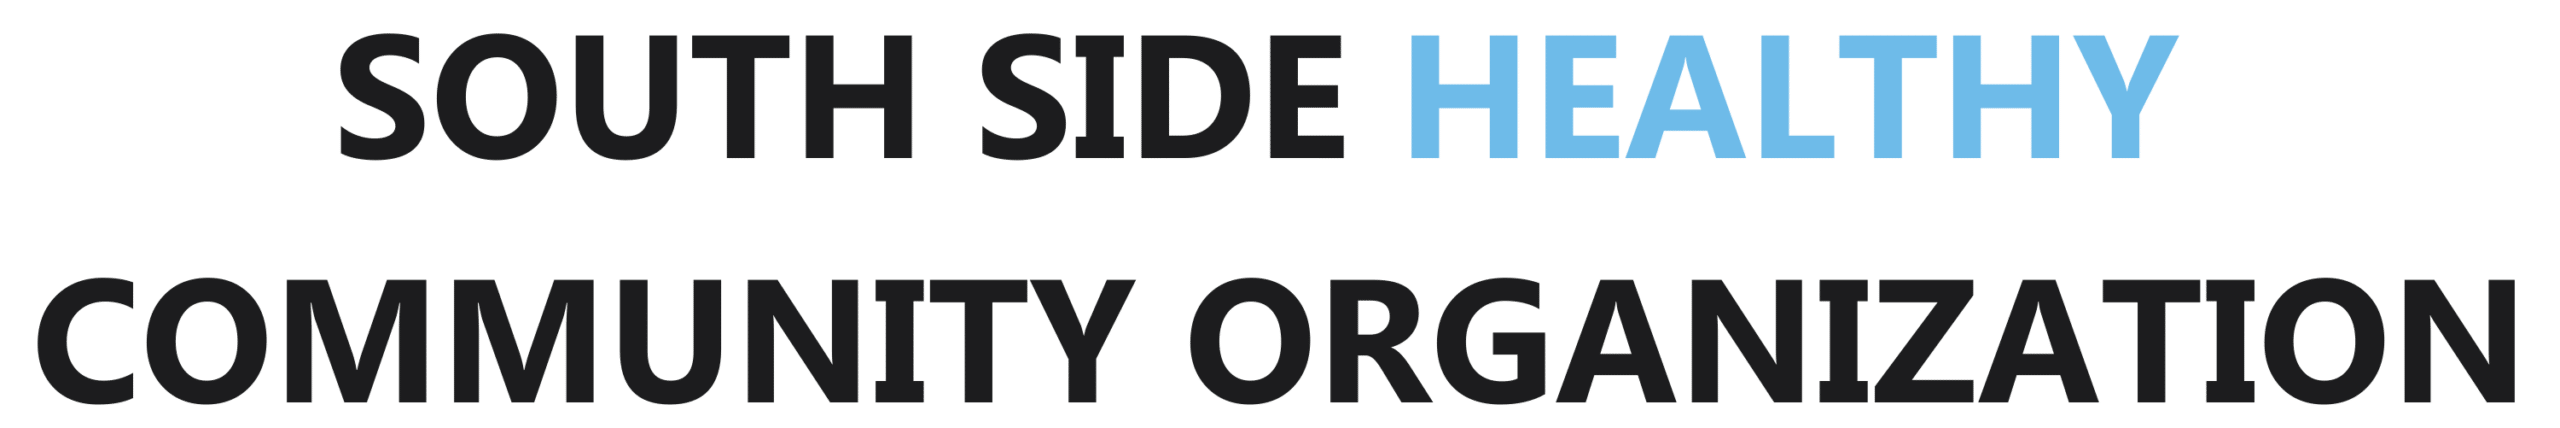 South Side Healthy Community Organization Logo